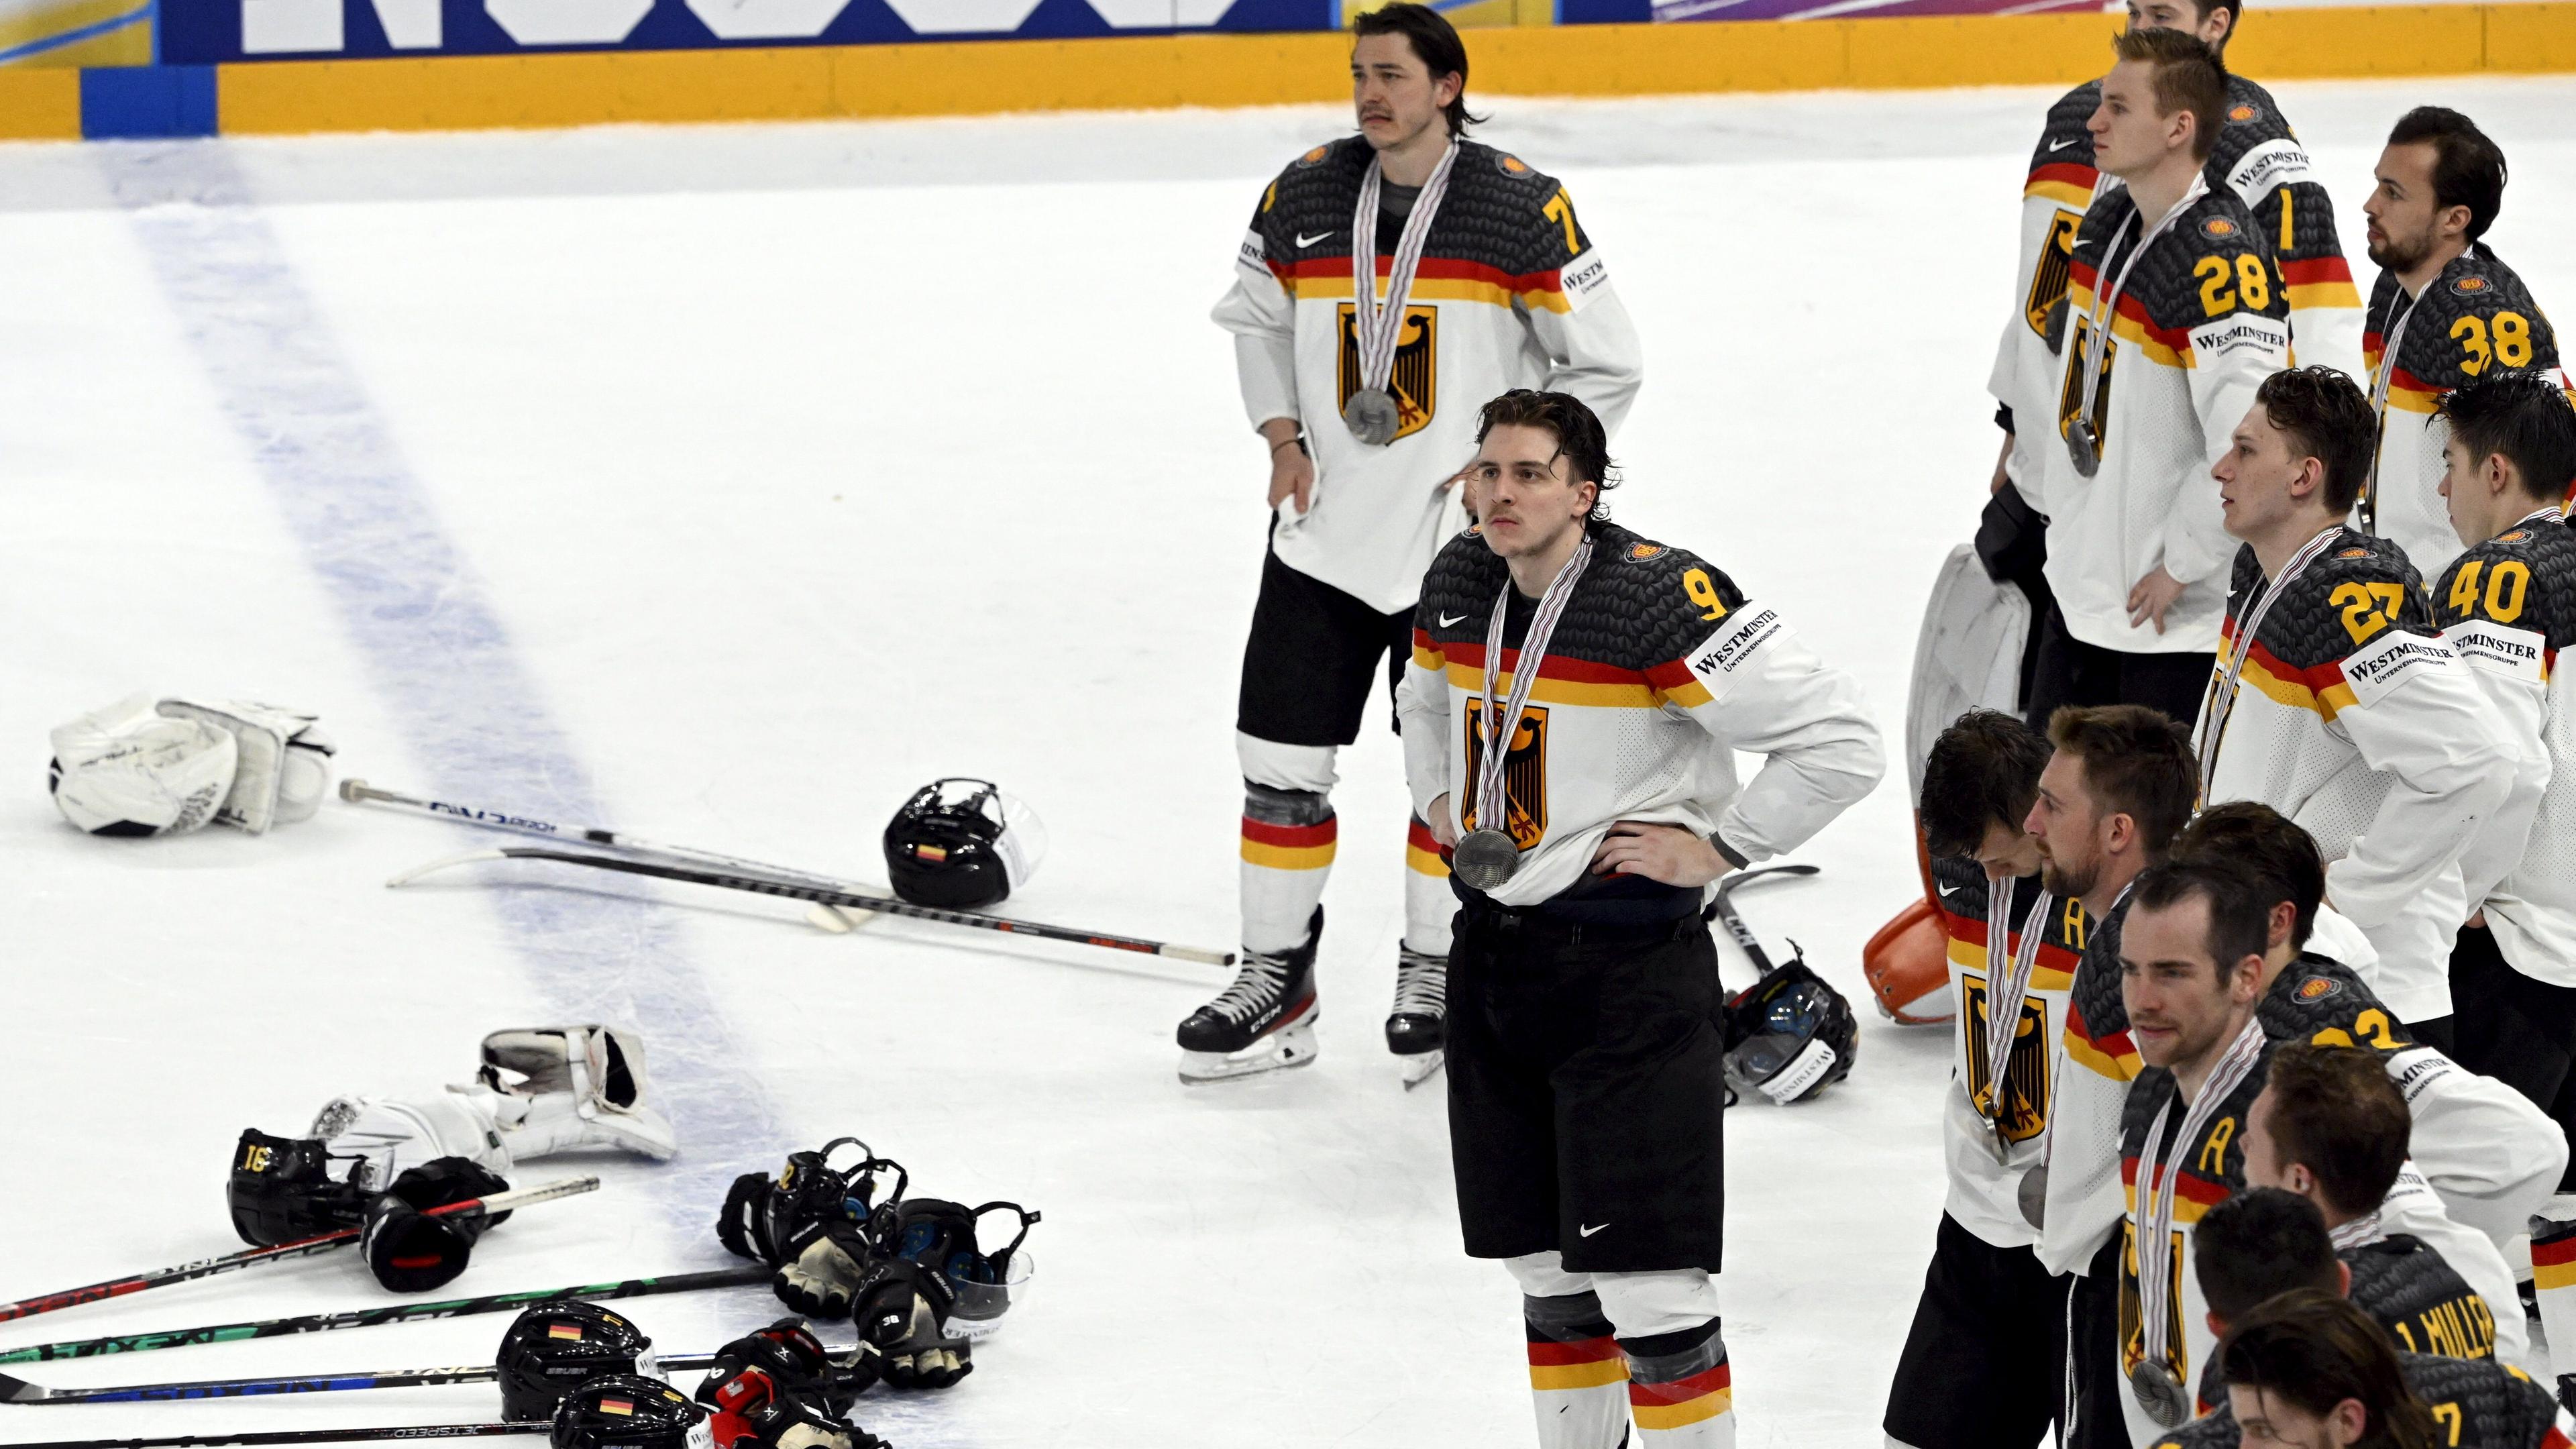 Eishockey-WM, Kanada - Deutschland, Finale: Deutsche Spieler mit traurigen Mienen nach der Niederlage.